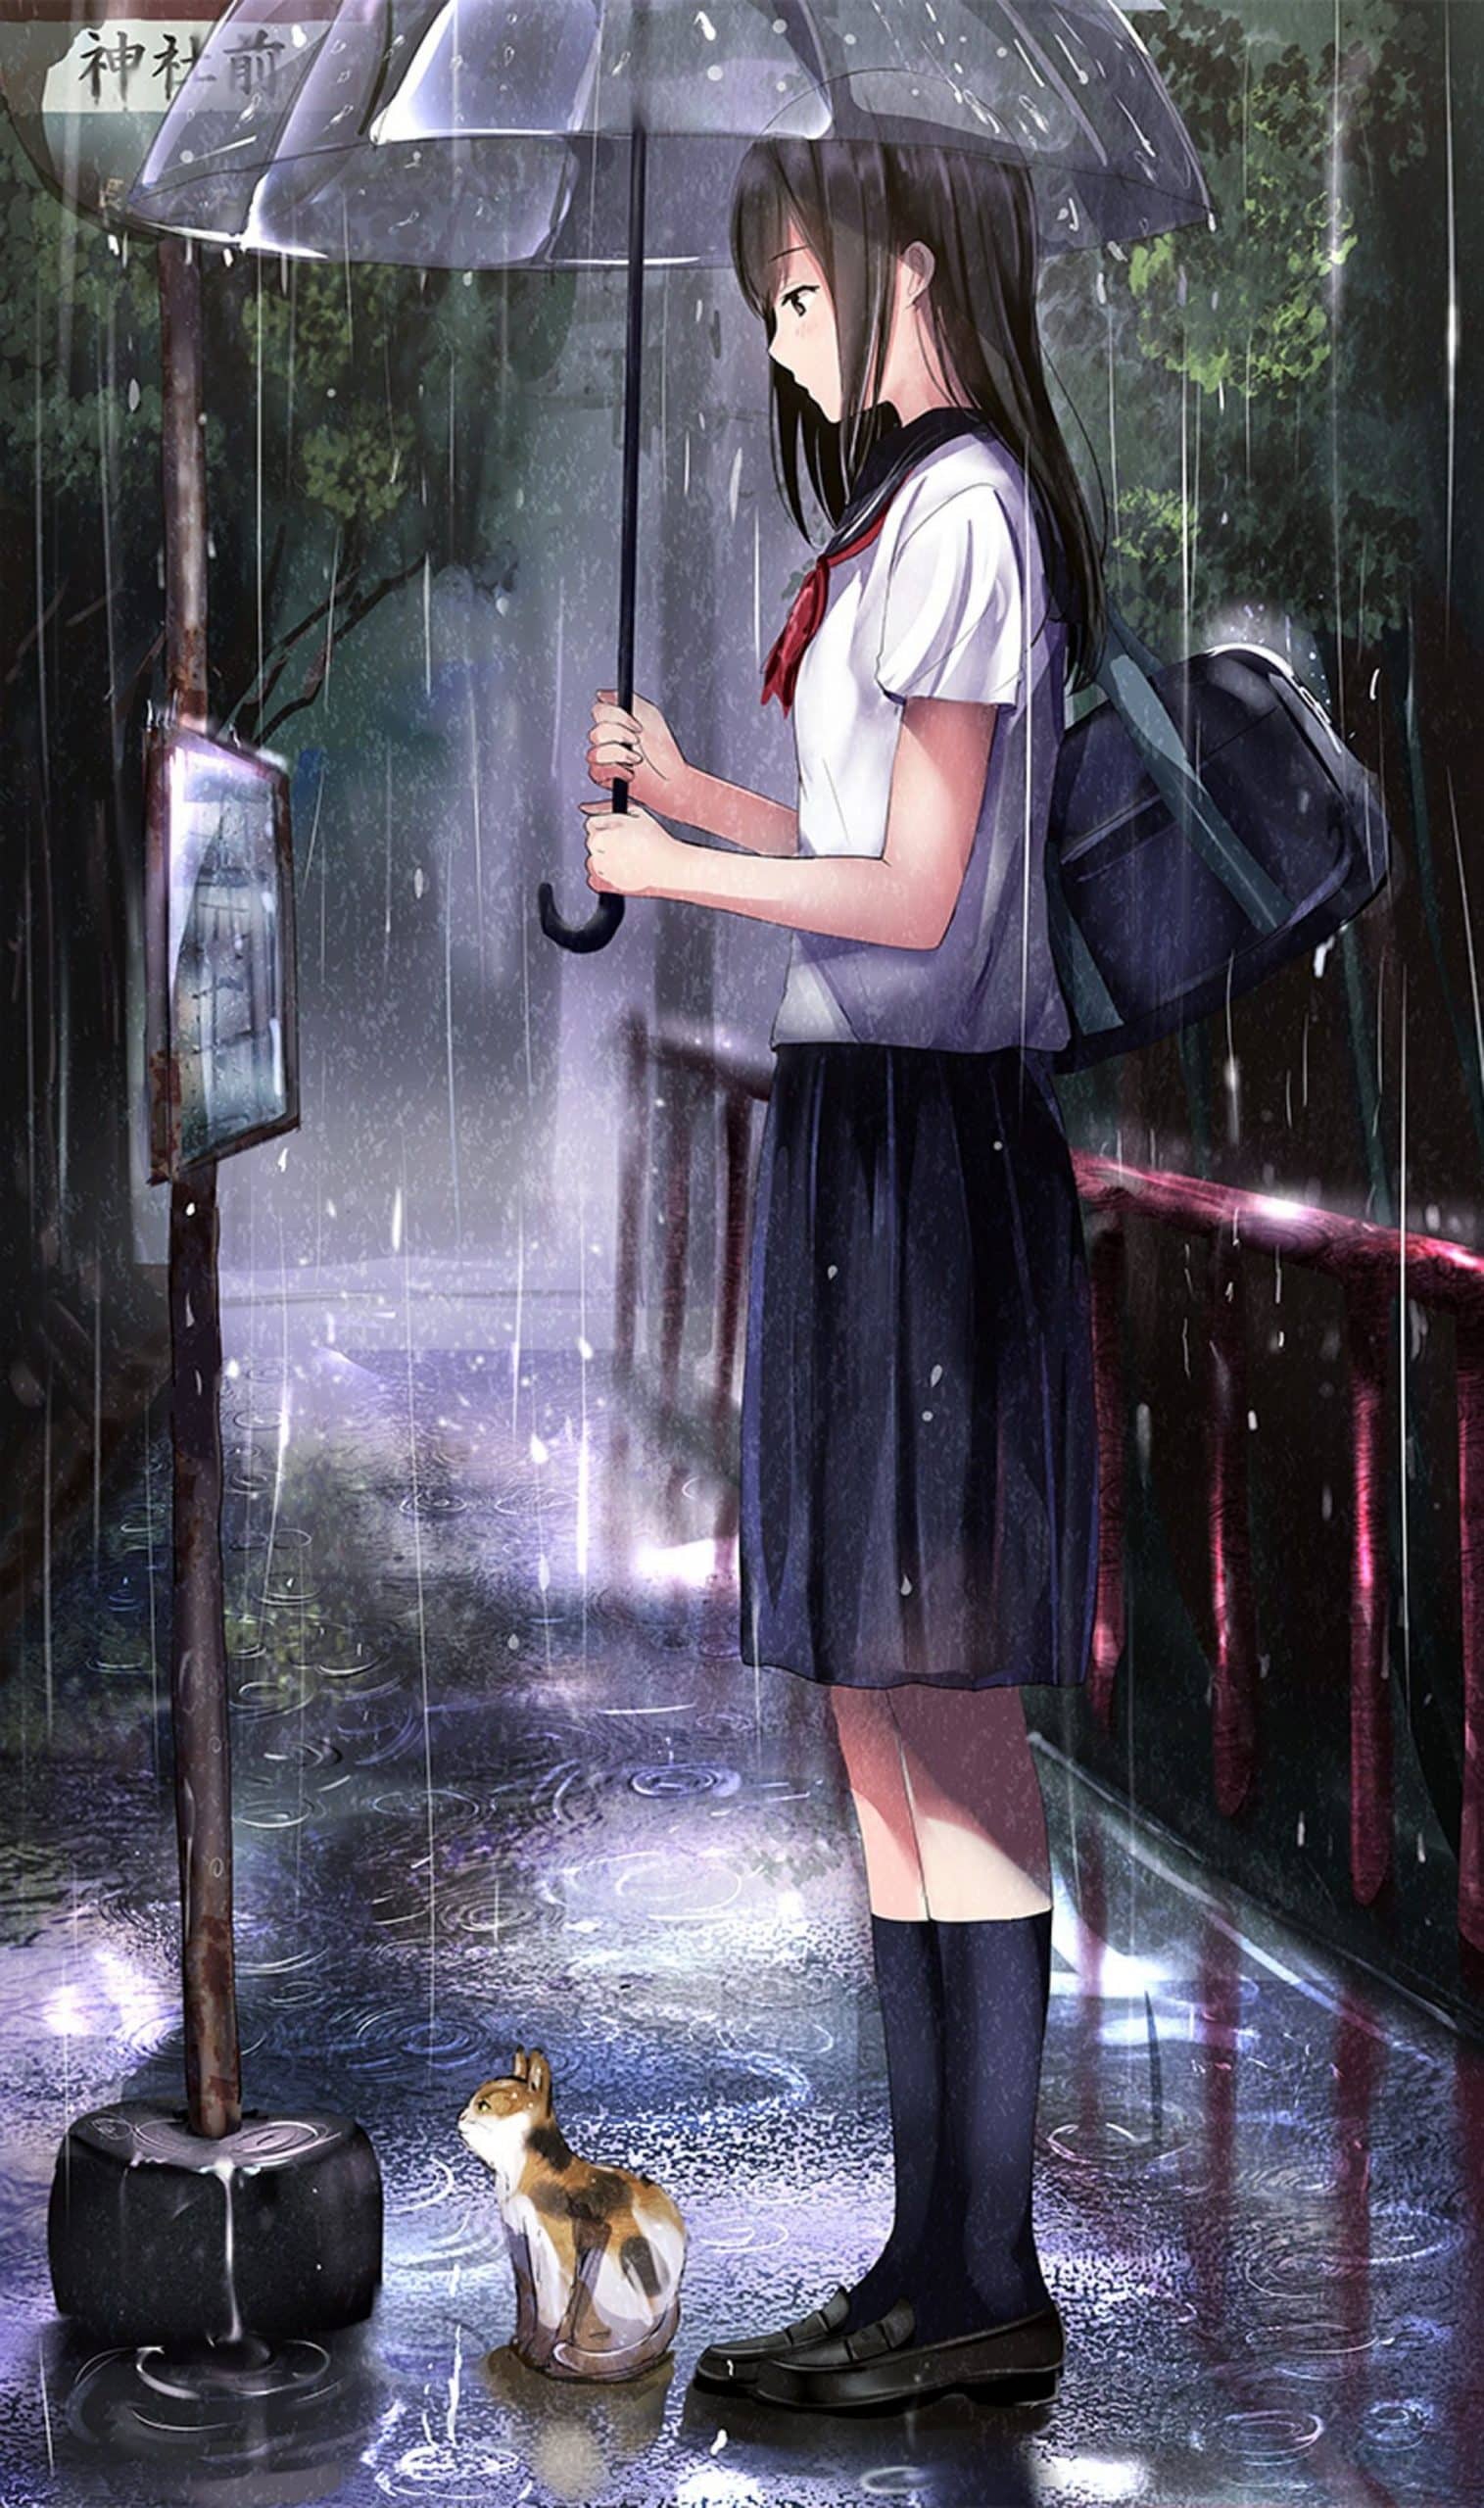 Hình Anime Nữ Buồn trong mưa